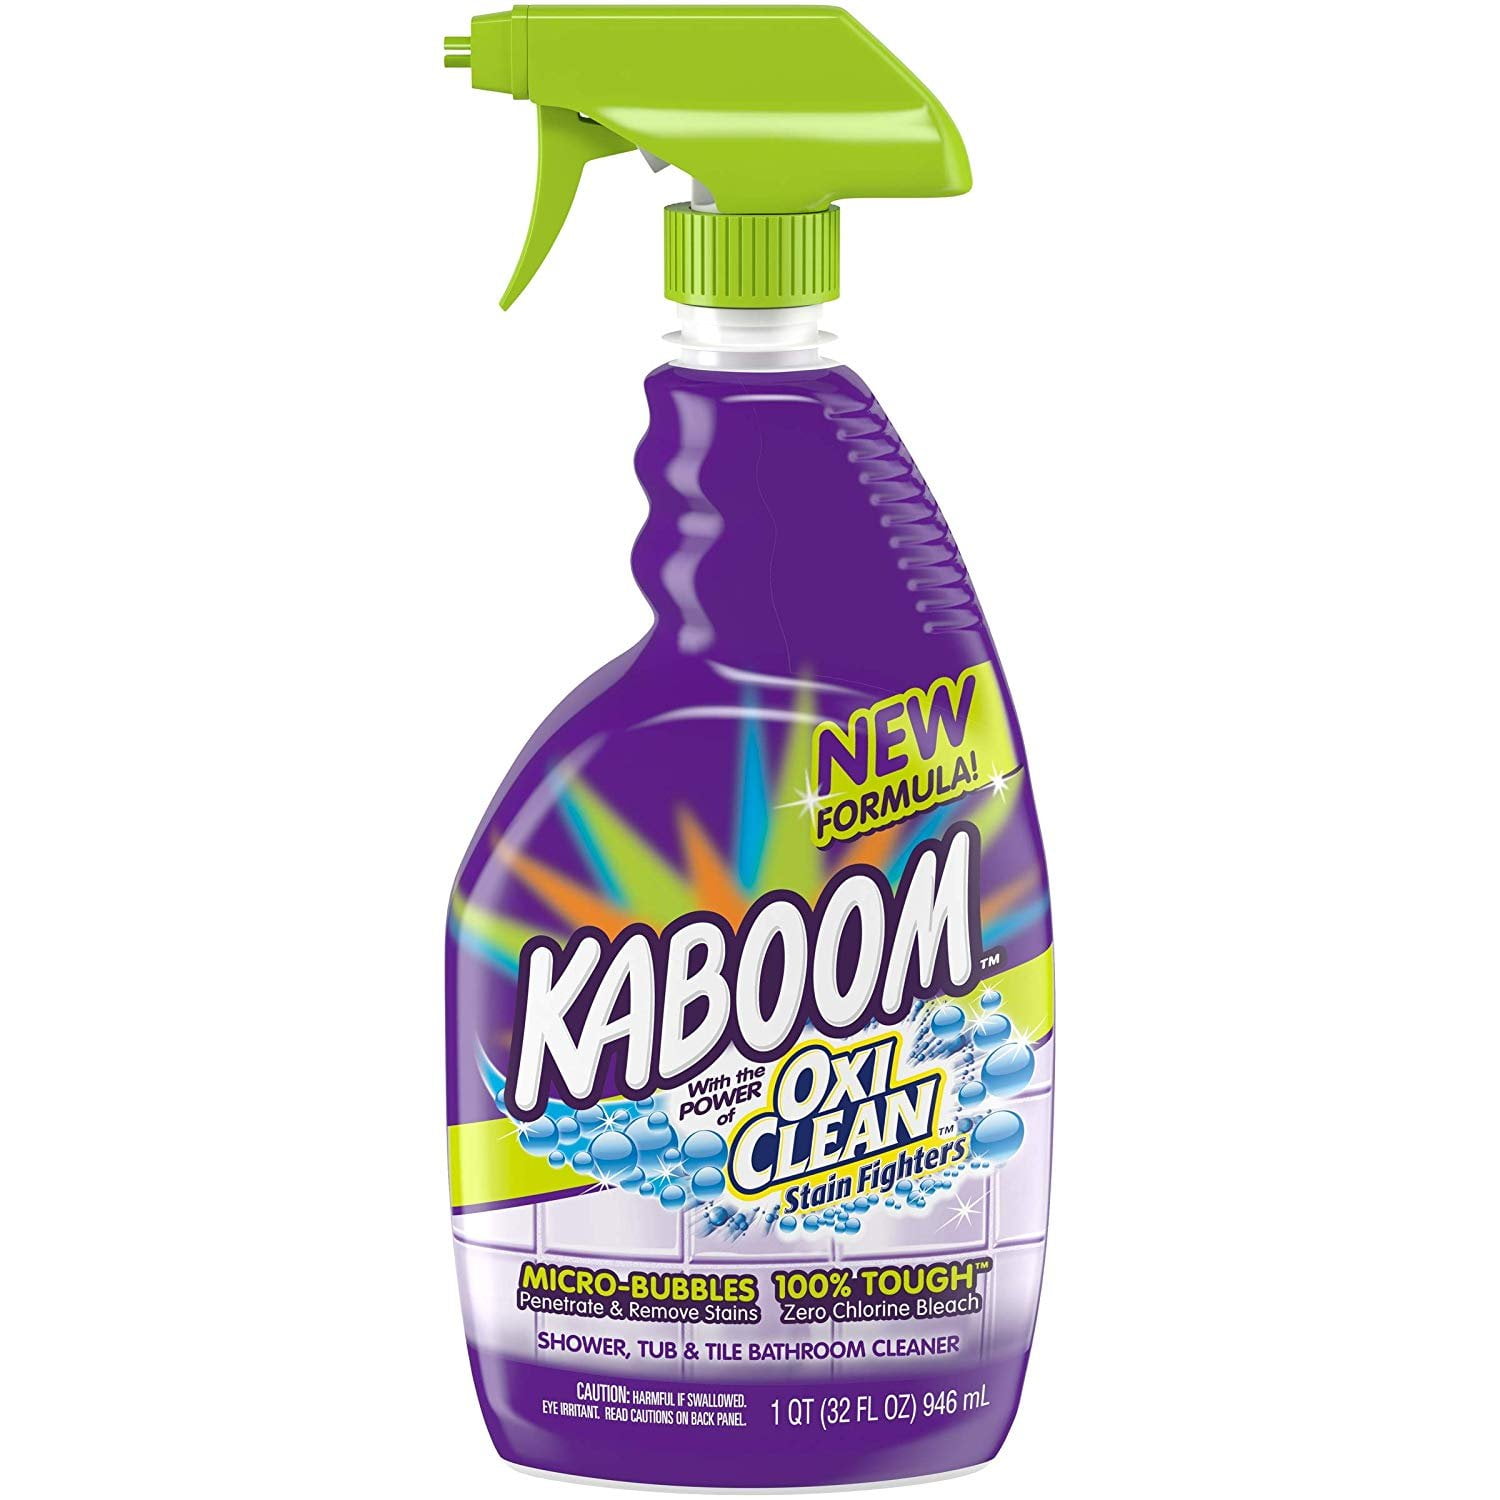  Kaboom Limpiador de baño con aroma fresco Foam-Tastic, 19  onzas, 2 unidades : Electrónica